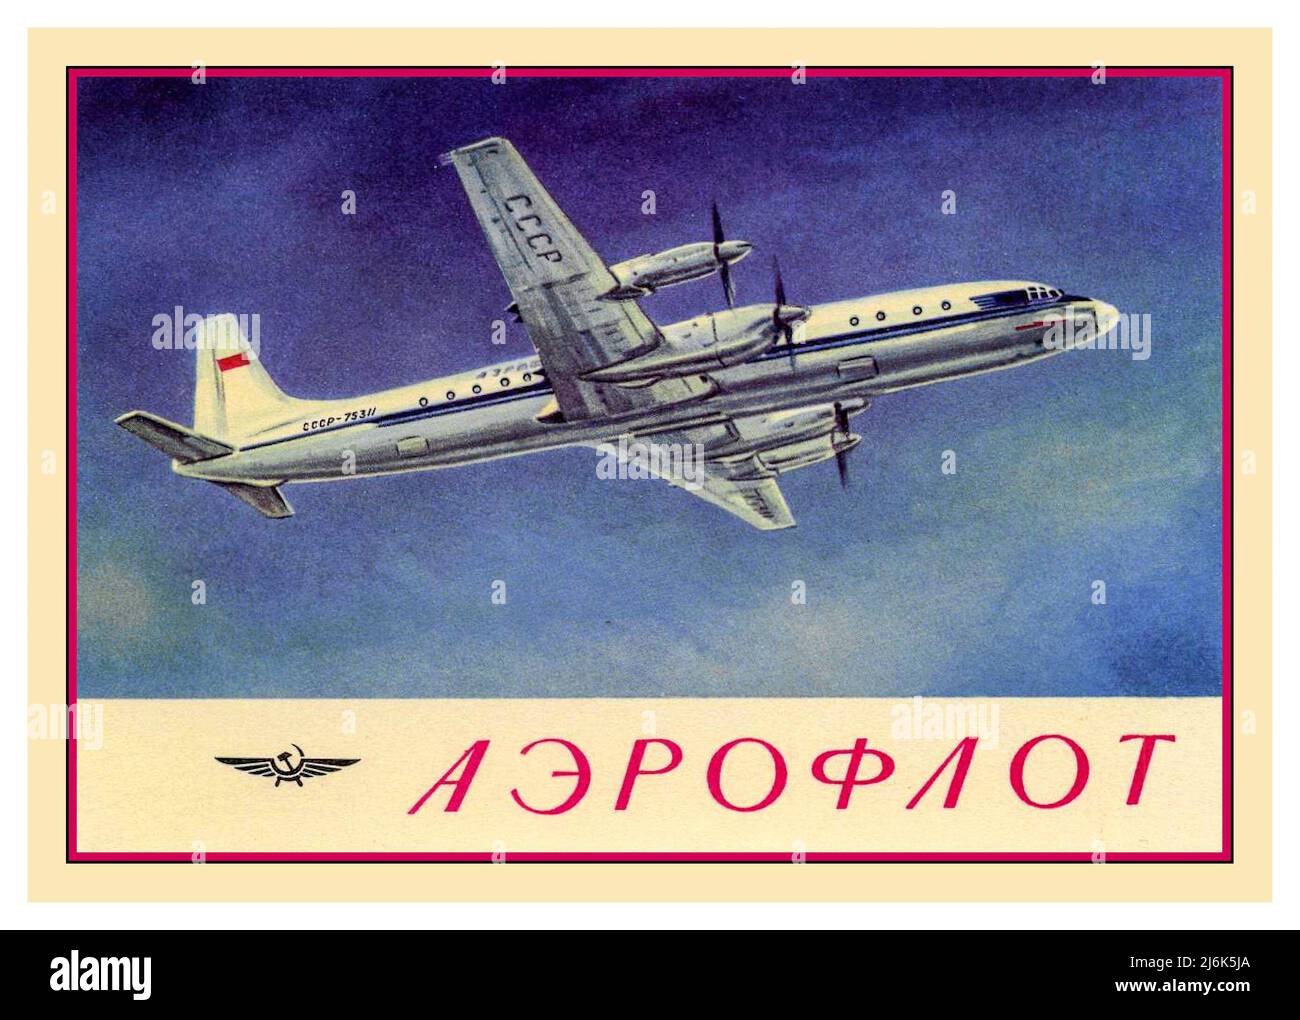 1960 Aeroflot Ilyushin II 18 avion de passagers CCCP russe, carte postale promotionnelle en vol Banque D'Images